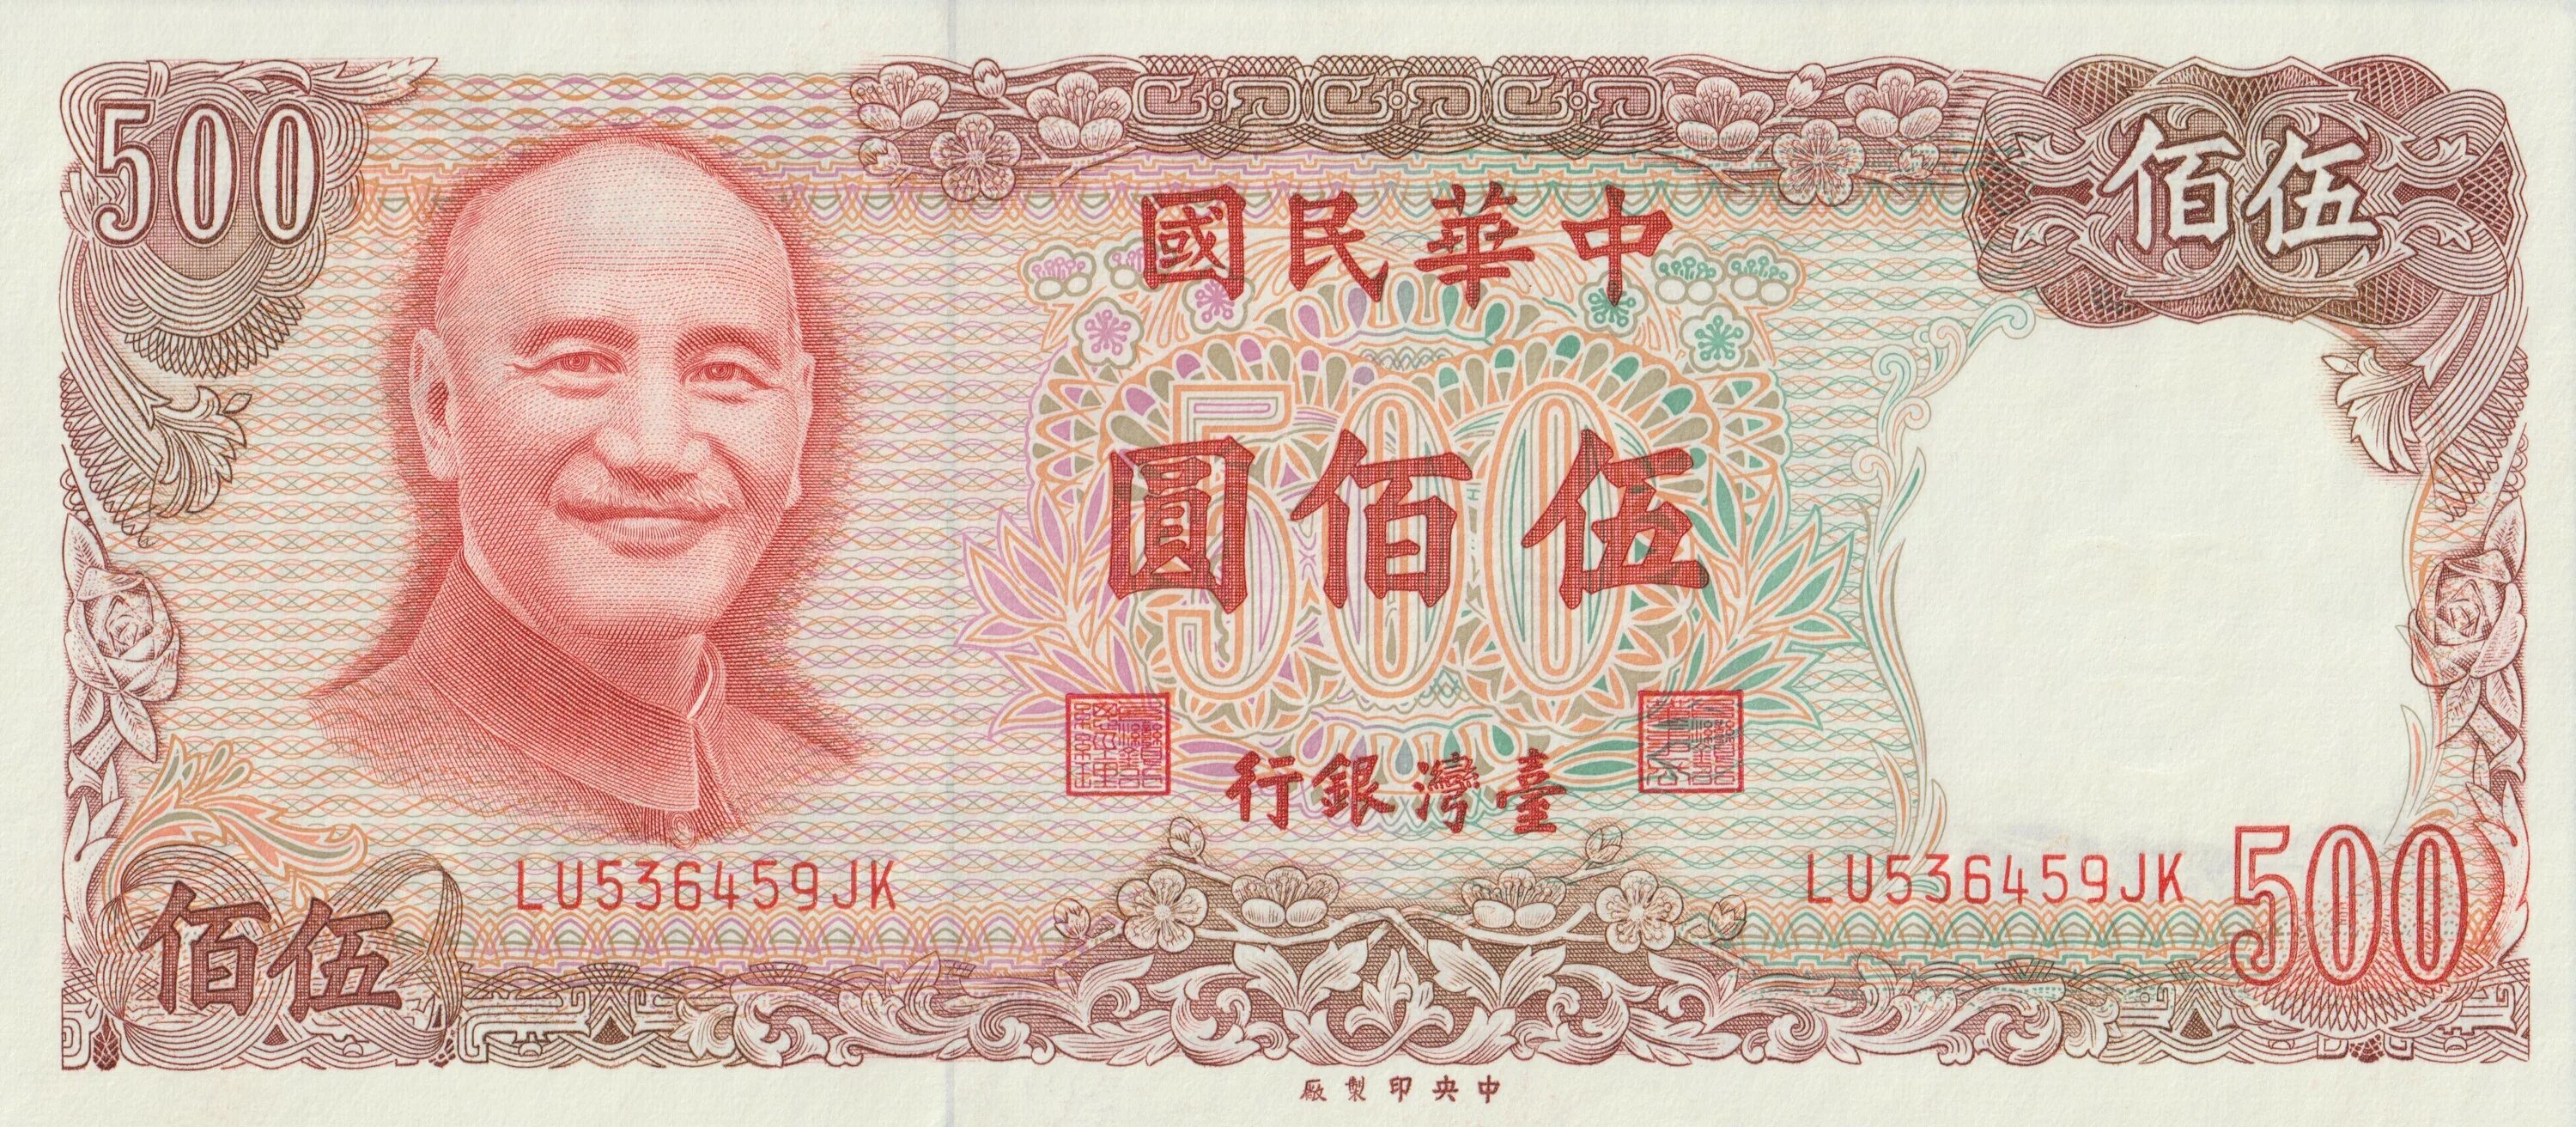 500 Юань Тайваня банкнота. Китайский Йуан 500. 1 Юань Чан Кайши Тайваня. Купюра 500 юаней Китай.